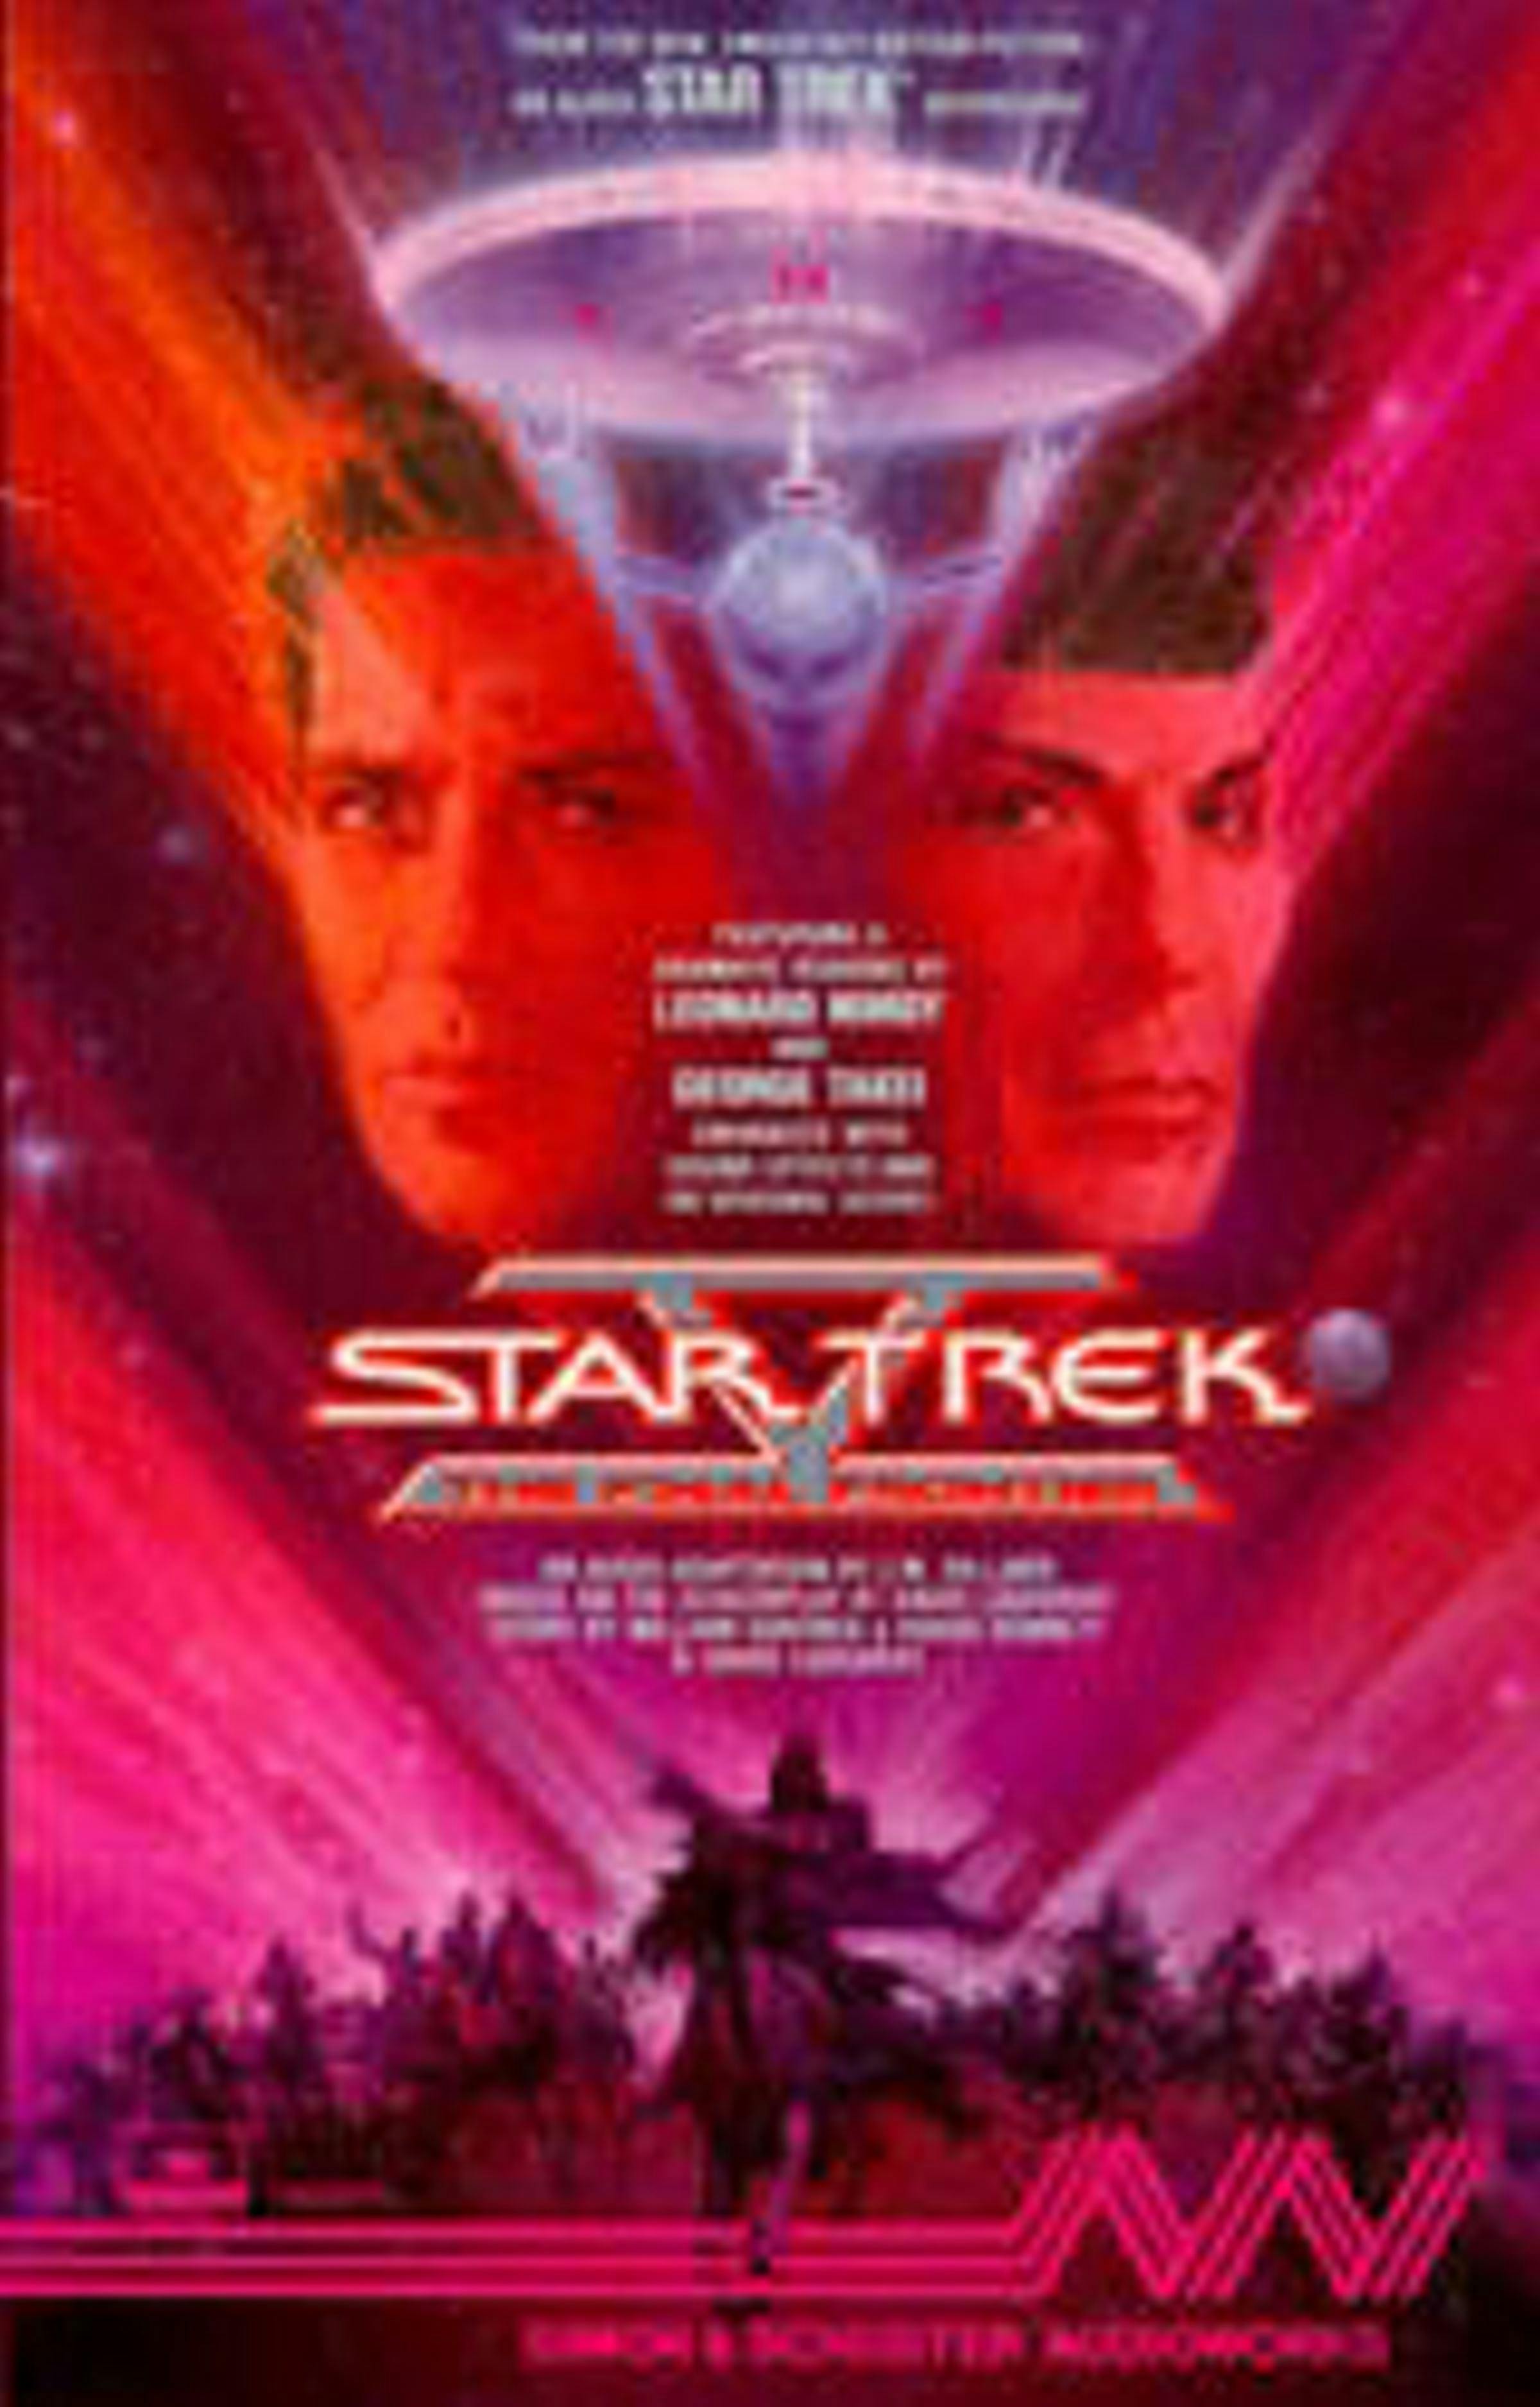 Star Trek 5: the Final Frontier - J.M. Dillard